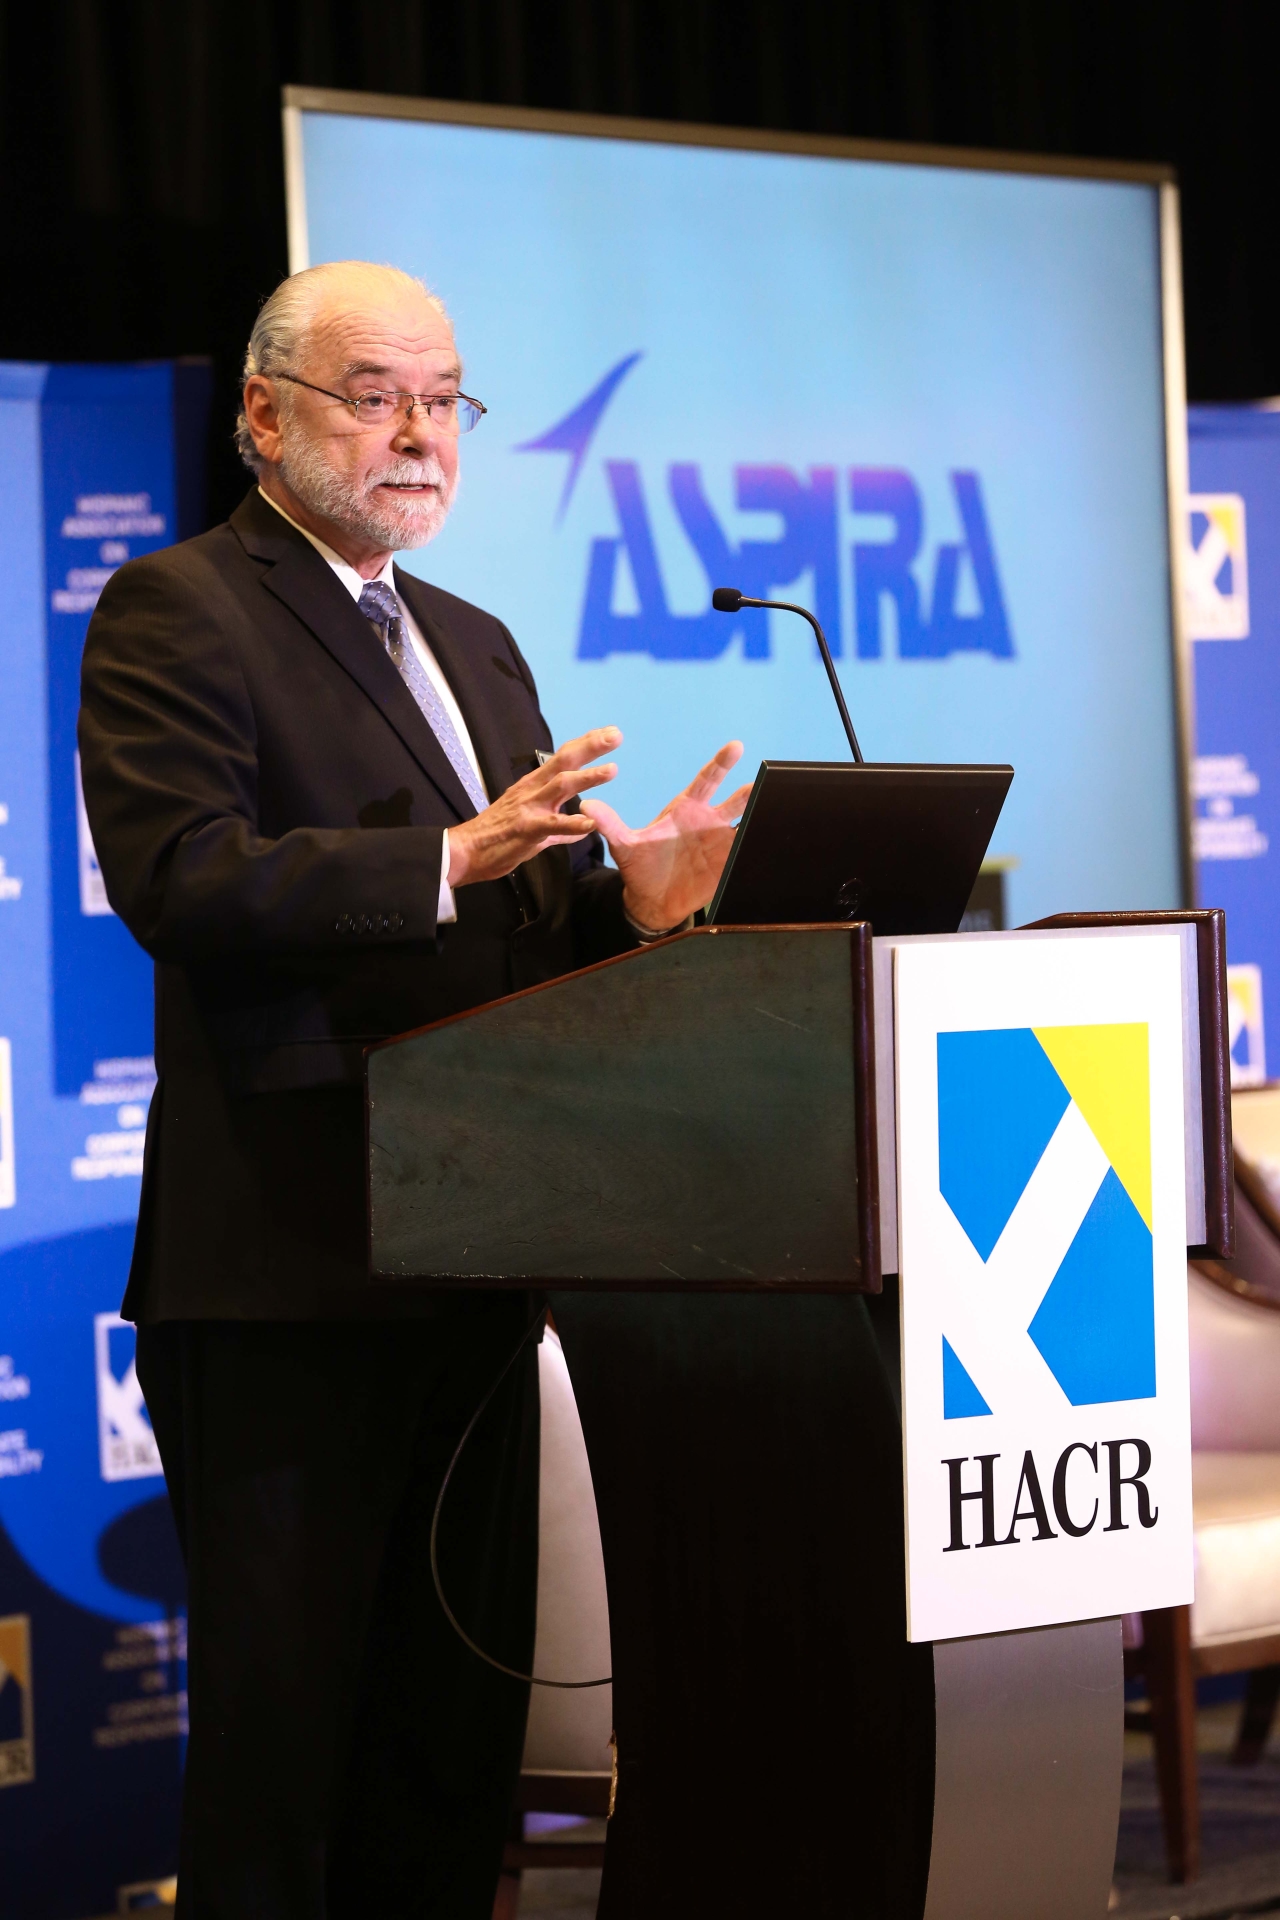 Ronald Blackburn Moreno with HACR logo and Aspira logo behind him